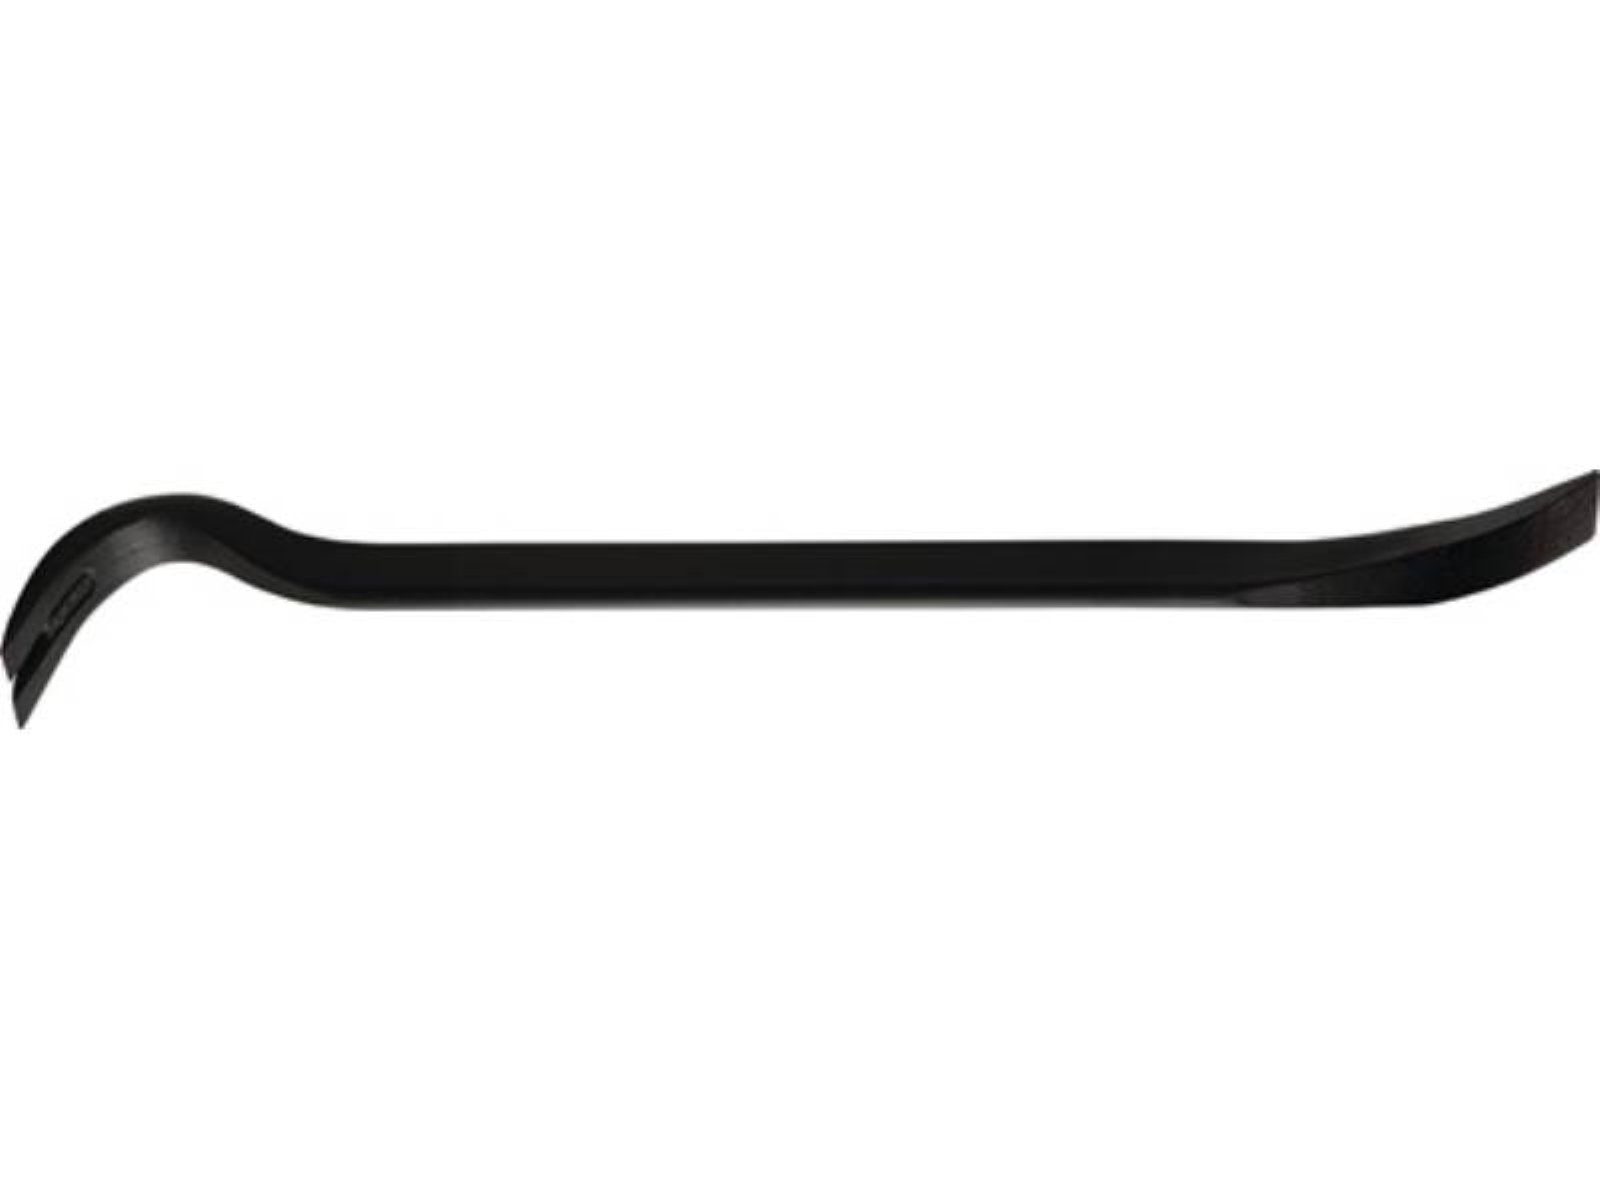 Gesamtlänge ovaler Nageleisen Nageleisen 350 mm, Korpus Peddinghaus Form ovale mit Power Bar